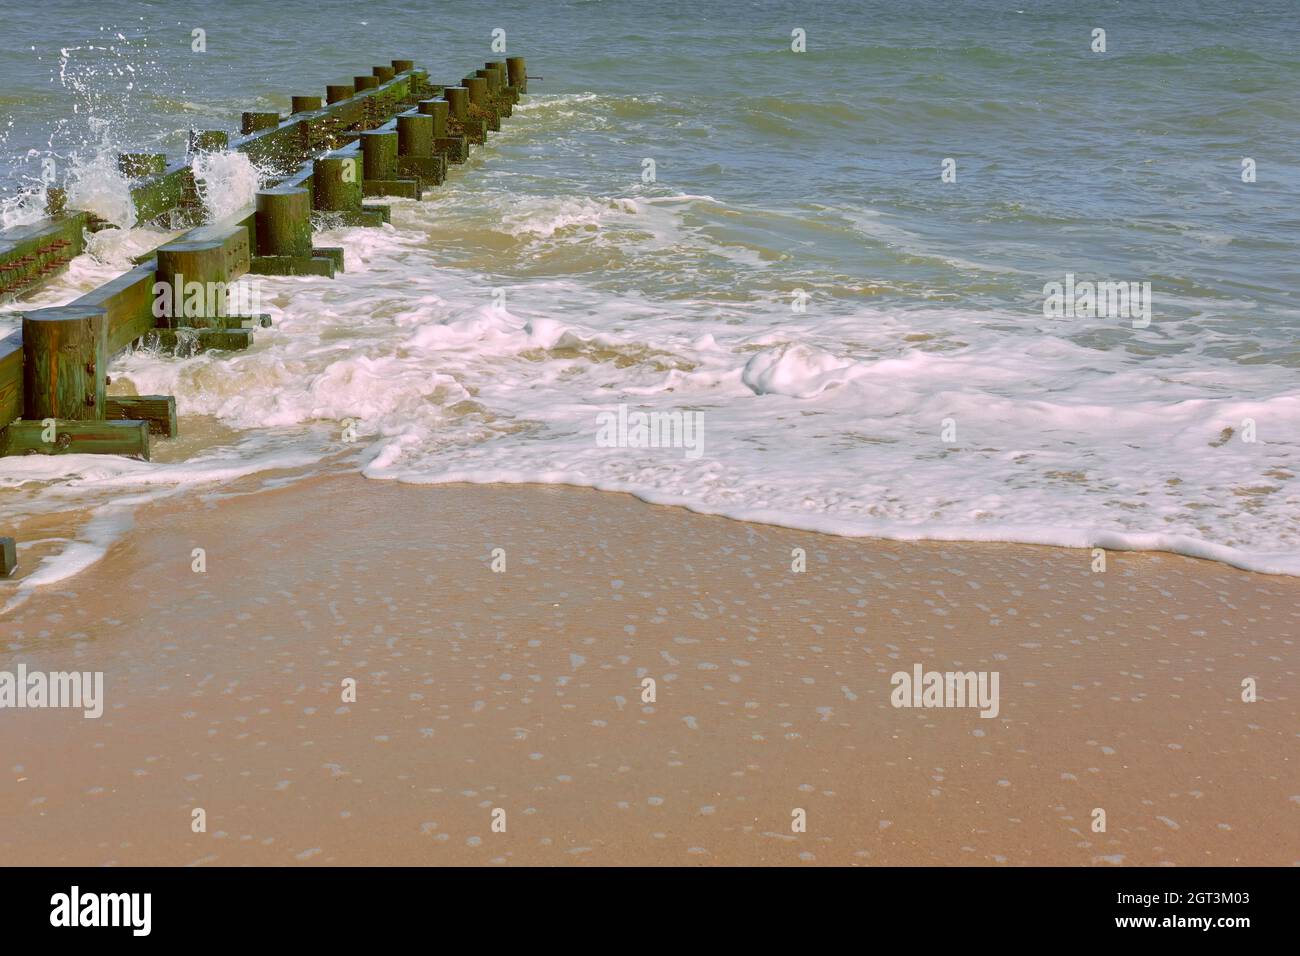 Il surf sull'Oceano Atlantico schiumoso passa davanti a un frangiflutti di legno durante una giornata di sole. Foto Stock